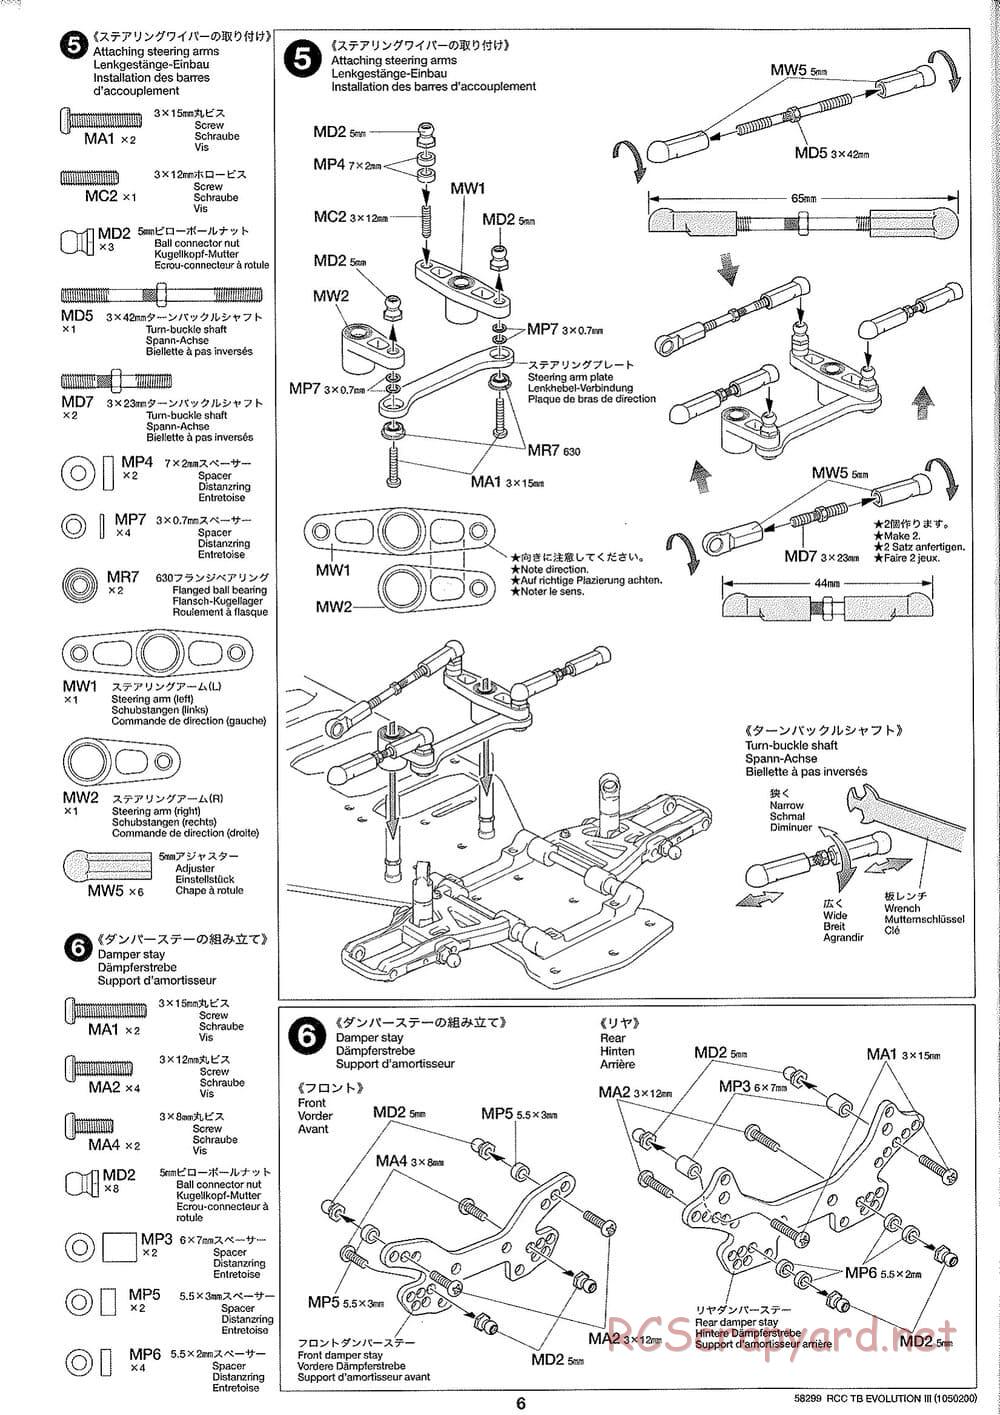 Tamiya - TB Evolution III Chassis - Manual - Page 7